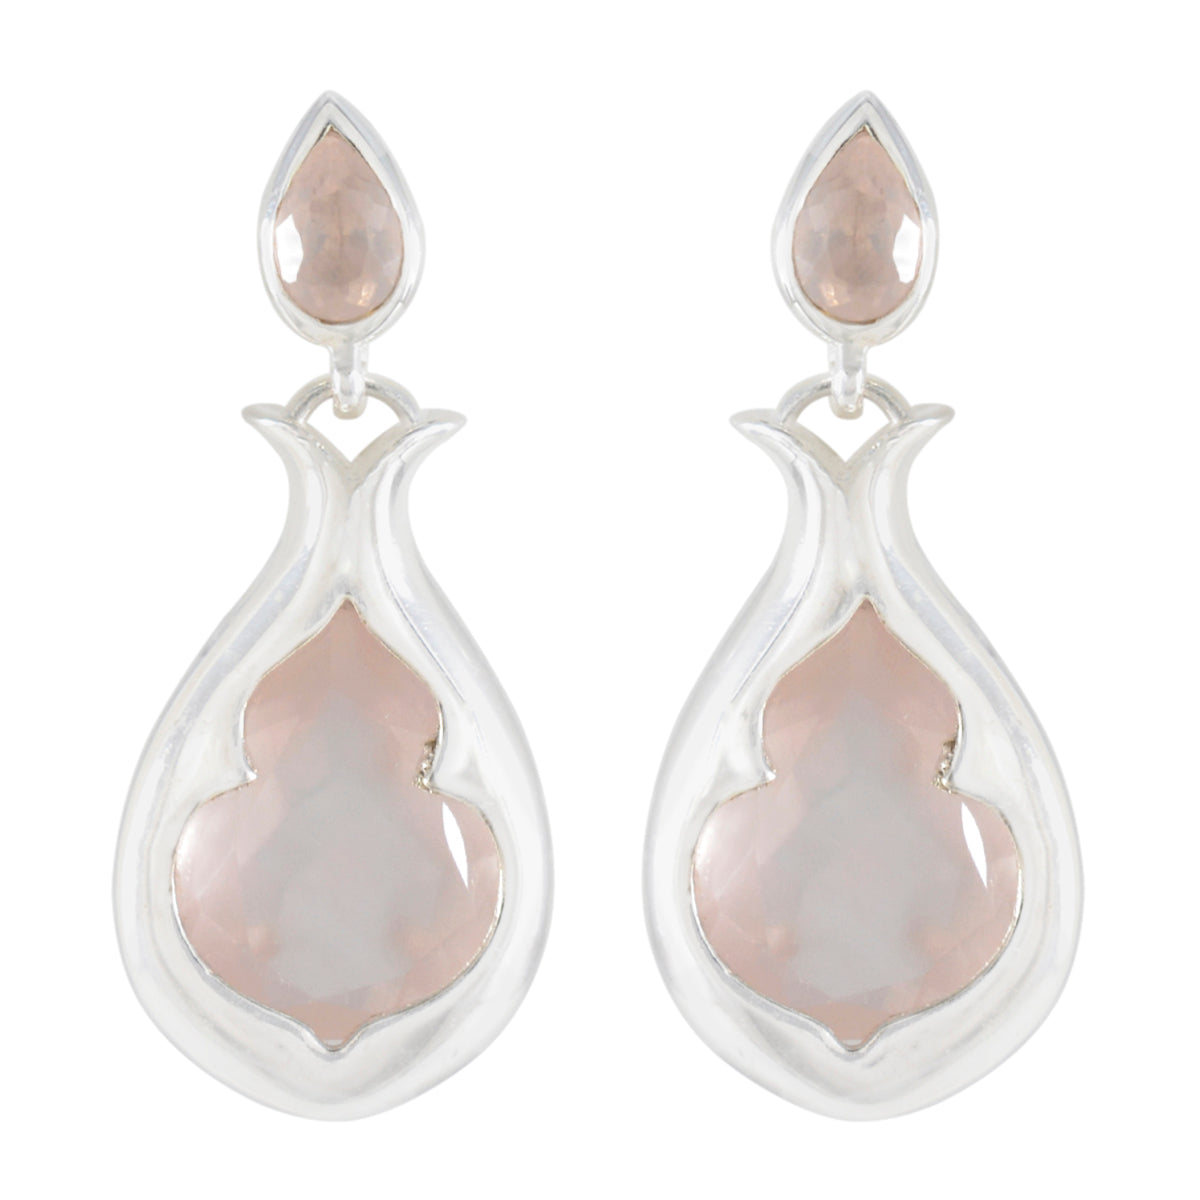 Riyo Alluring Sterling Silver Earring For Femme Rose Quartz Earring Bezel Setting Pink Earring Stud Earring